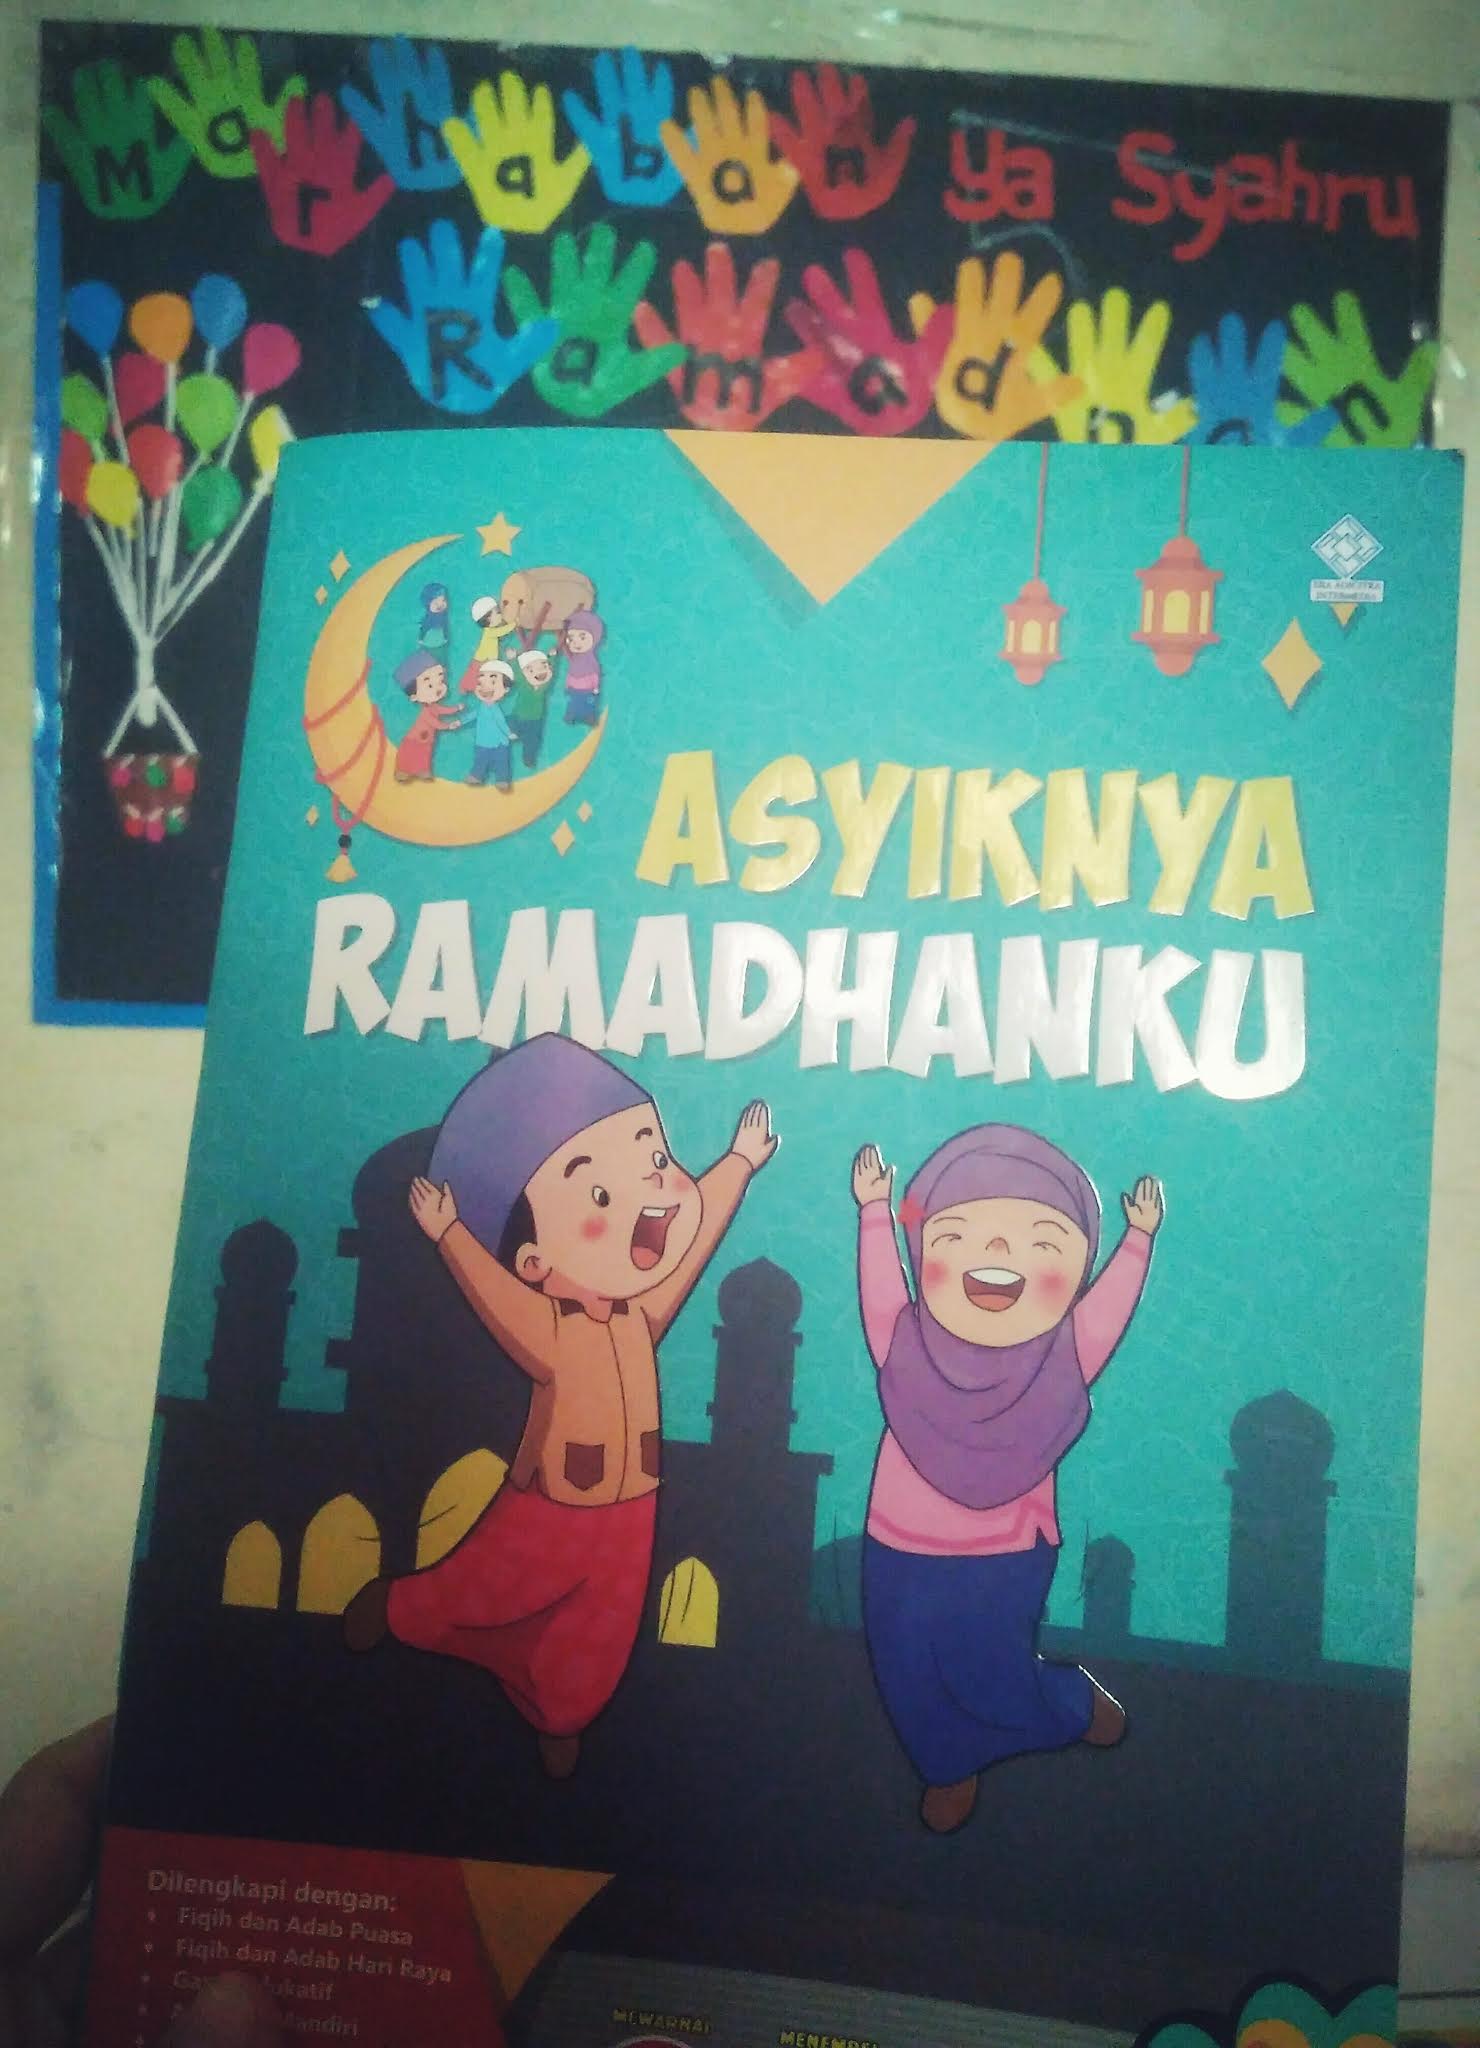 Asyiknya Ramadhanku (Book Review)